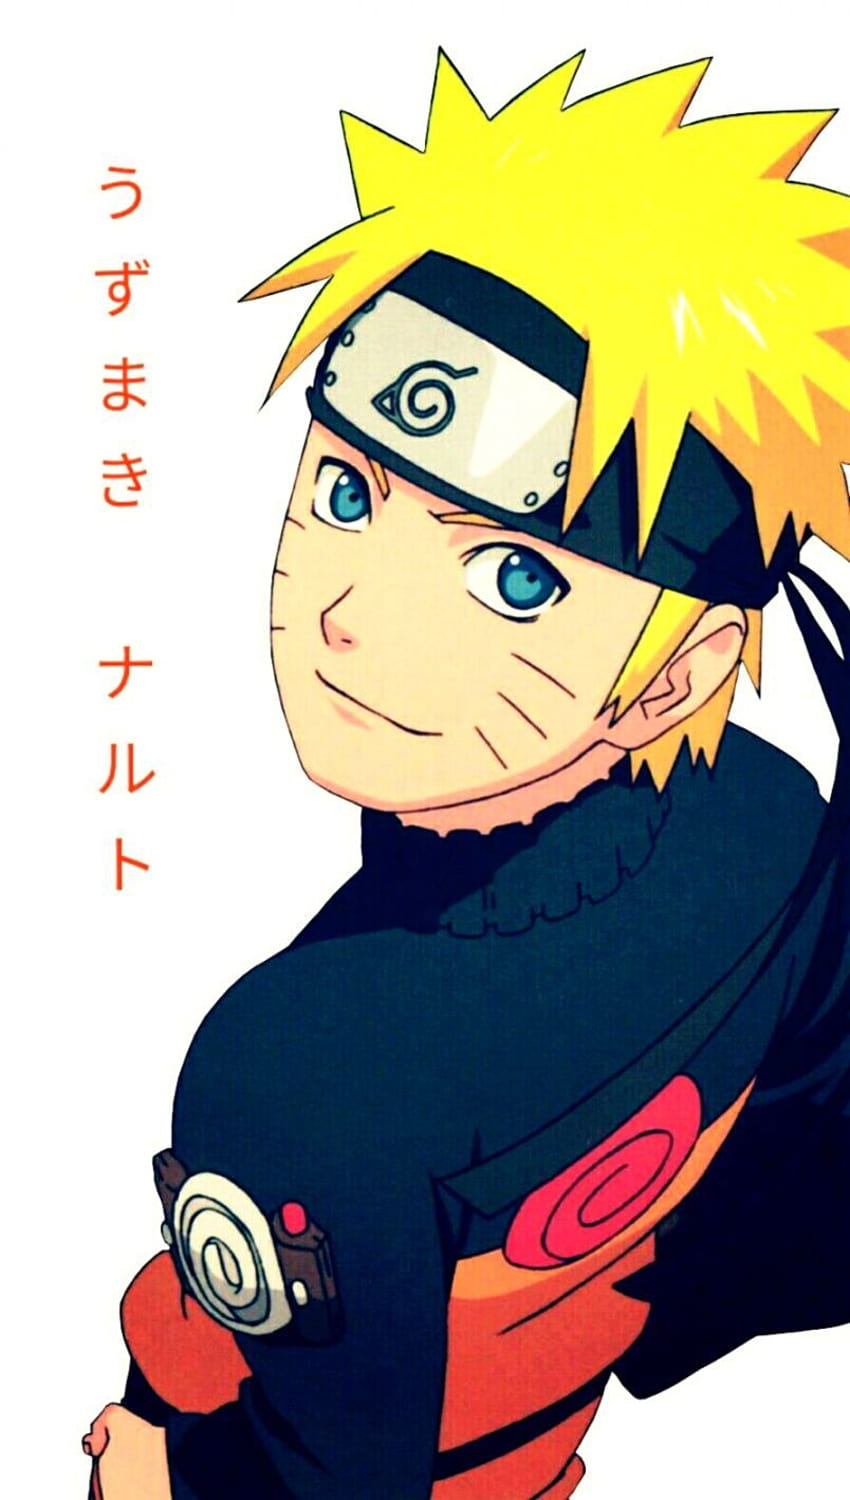 Nếu bạn muốn tìm kiếm hình nền Naruto đáng yêu để trang trí điện thoại của mình, hãy xem hình nền Cute Naruto HD phone wallpaper trên Pxfuel. Chúng tôi có một số hình nền Naruto tuyệt đẹp và dễ thương, chắc chắn sẽ làm cho điện thoại của bạn trở nên đẹp hơn. Hãy tải xuống và sử dụng hình nền Cute Naruto cho điện thoại của bạn!